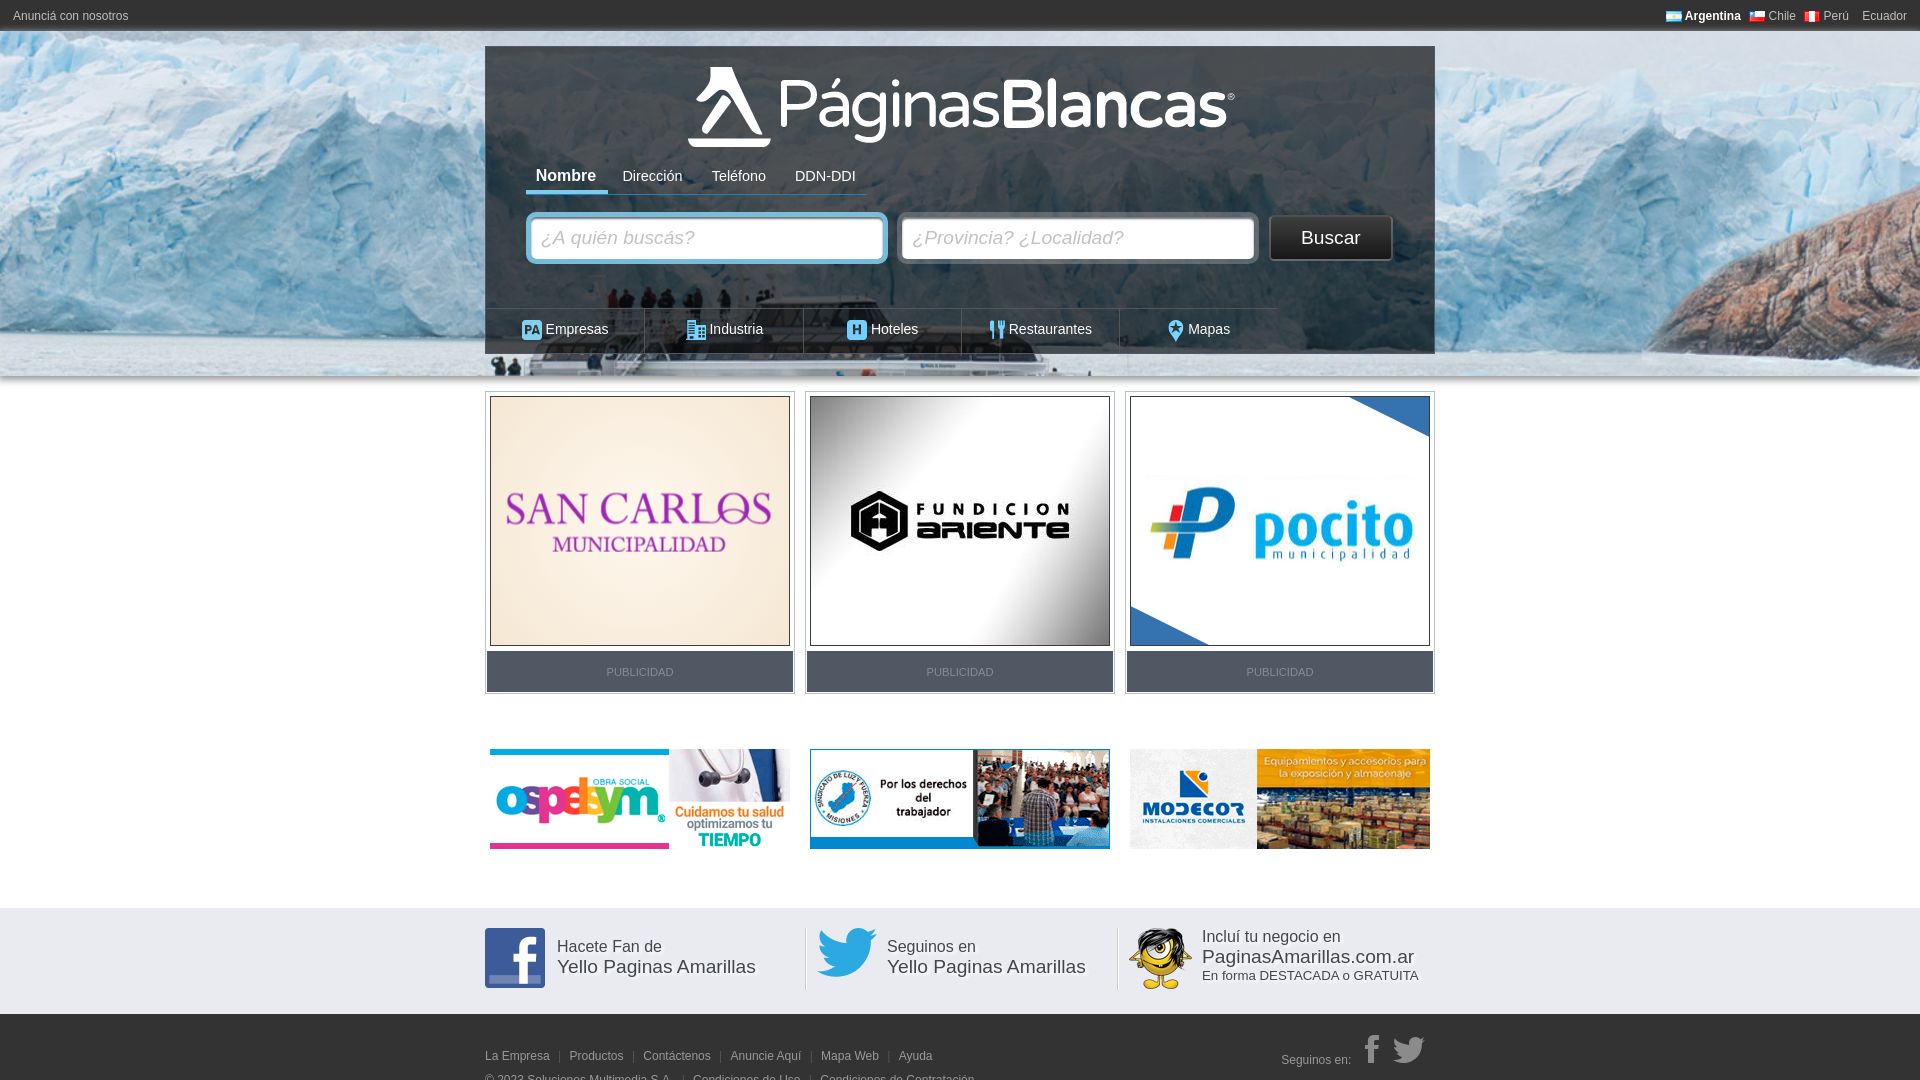 Estado web www.paginasblancas.com.ar está   ONLINE